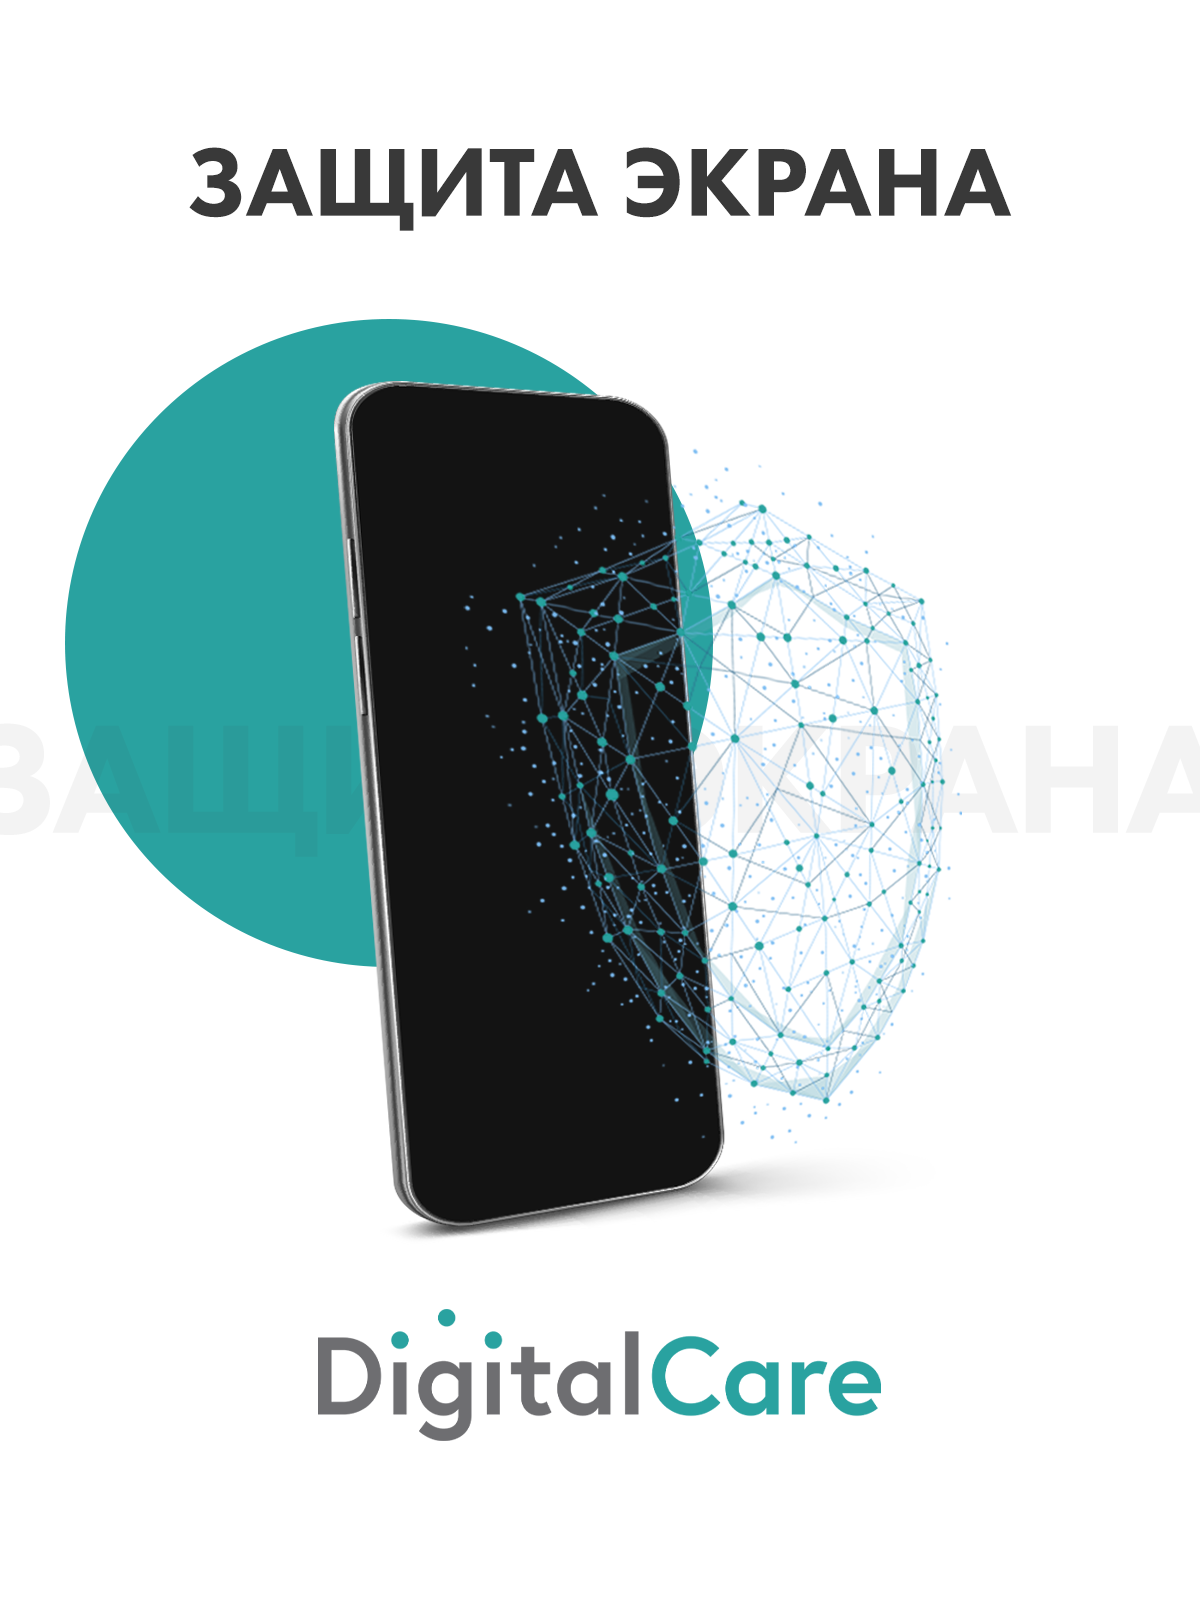 Цифровой продукт Digital Care